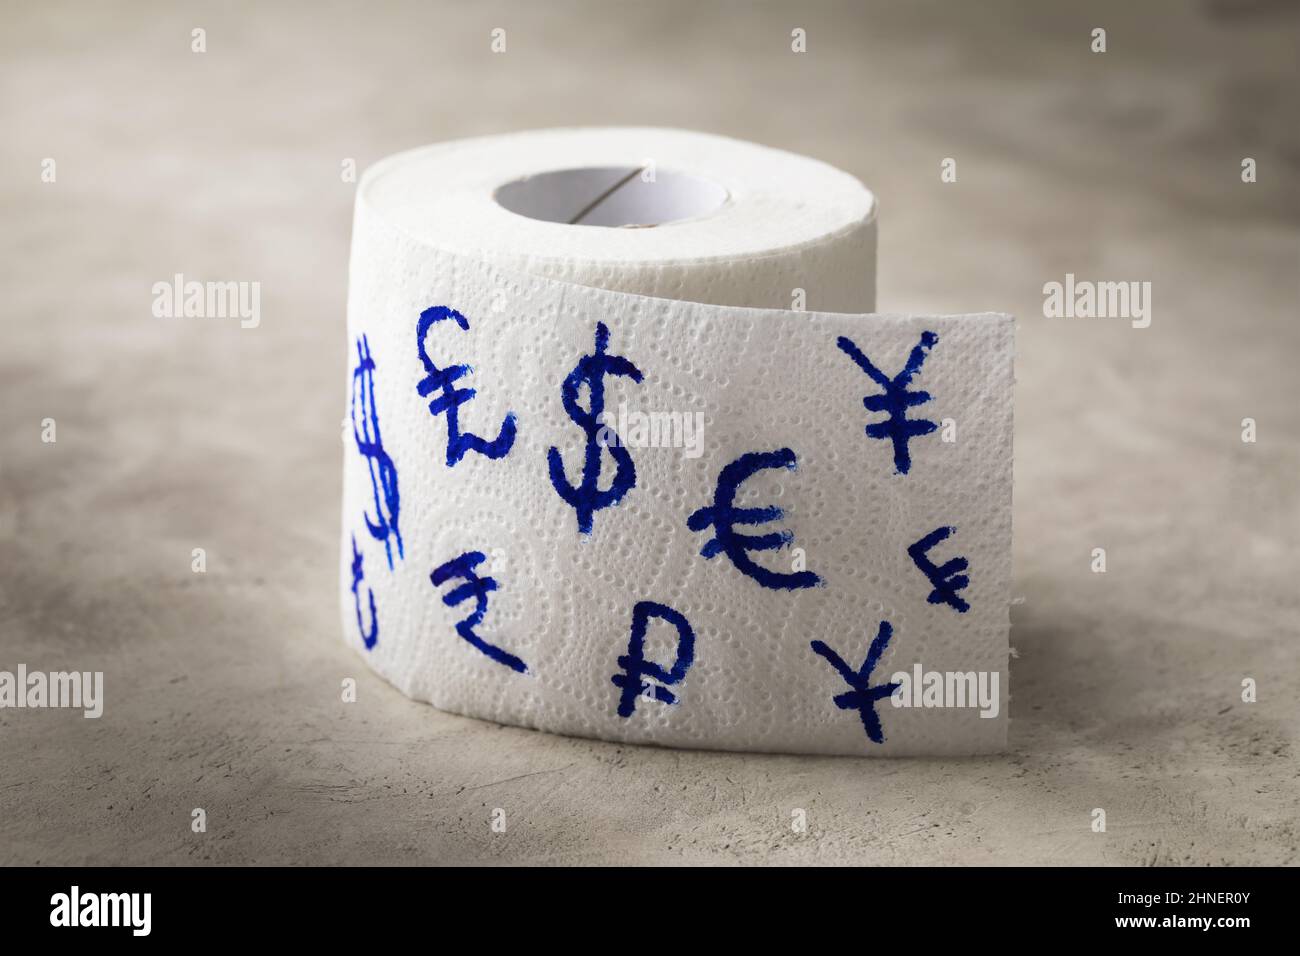 Toilettenpapierrolle mit Währungssymbolen verschiedener Länder darauf  gemalt, aufgeblähtes Wirtschaftskonzept, Witz, Geld ist nur Papier  Stockfotografie - Alamy